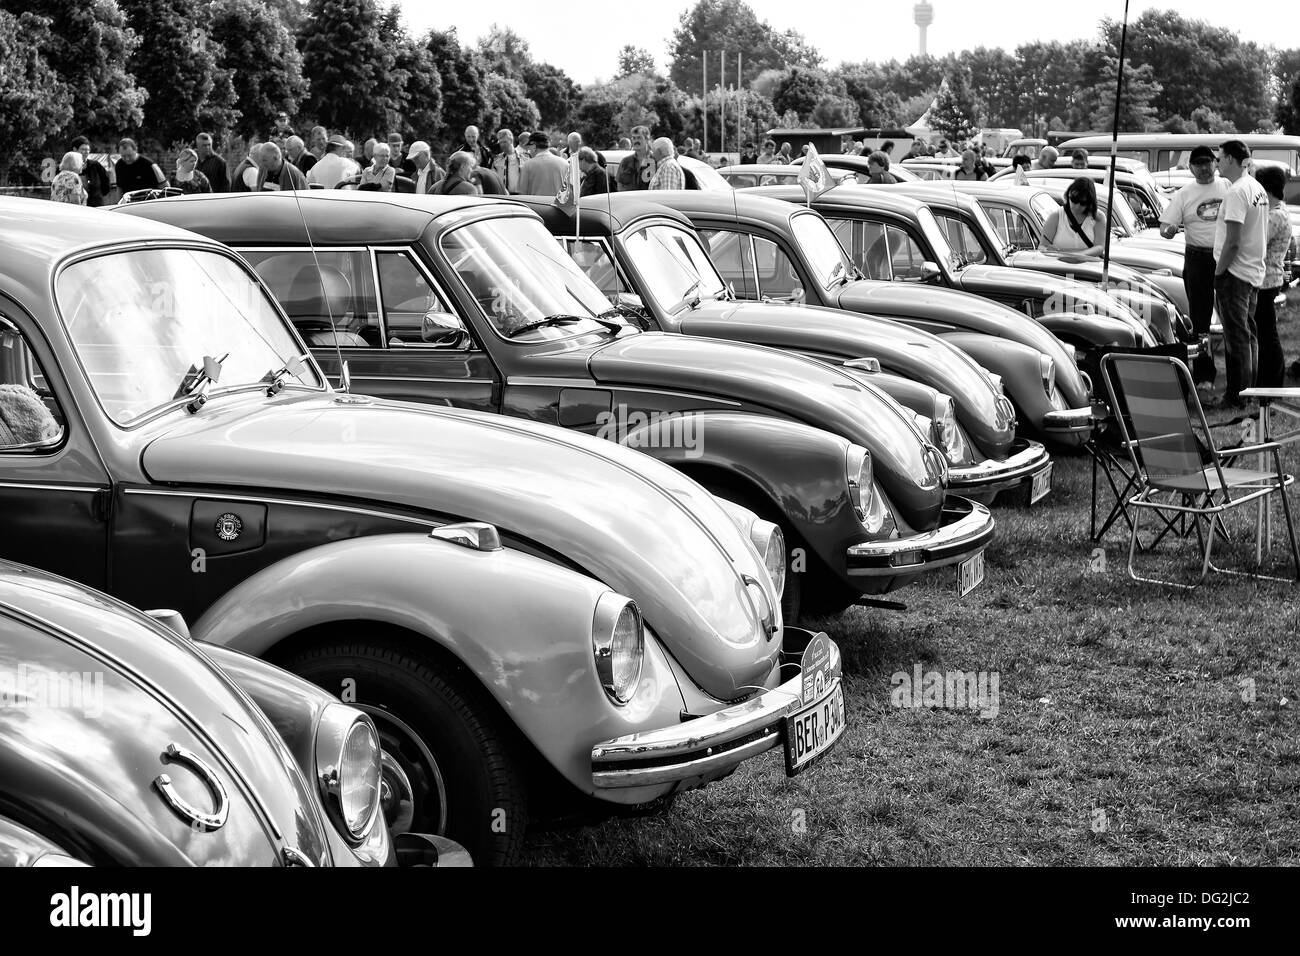 Il a plusieurs voitures Volkswagen Beetle (noir et blanc) Banque D'Images